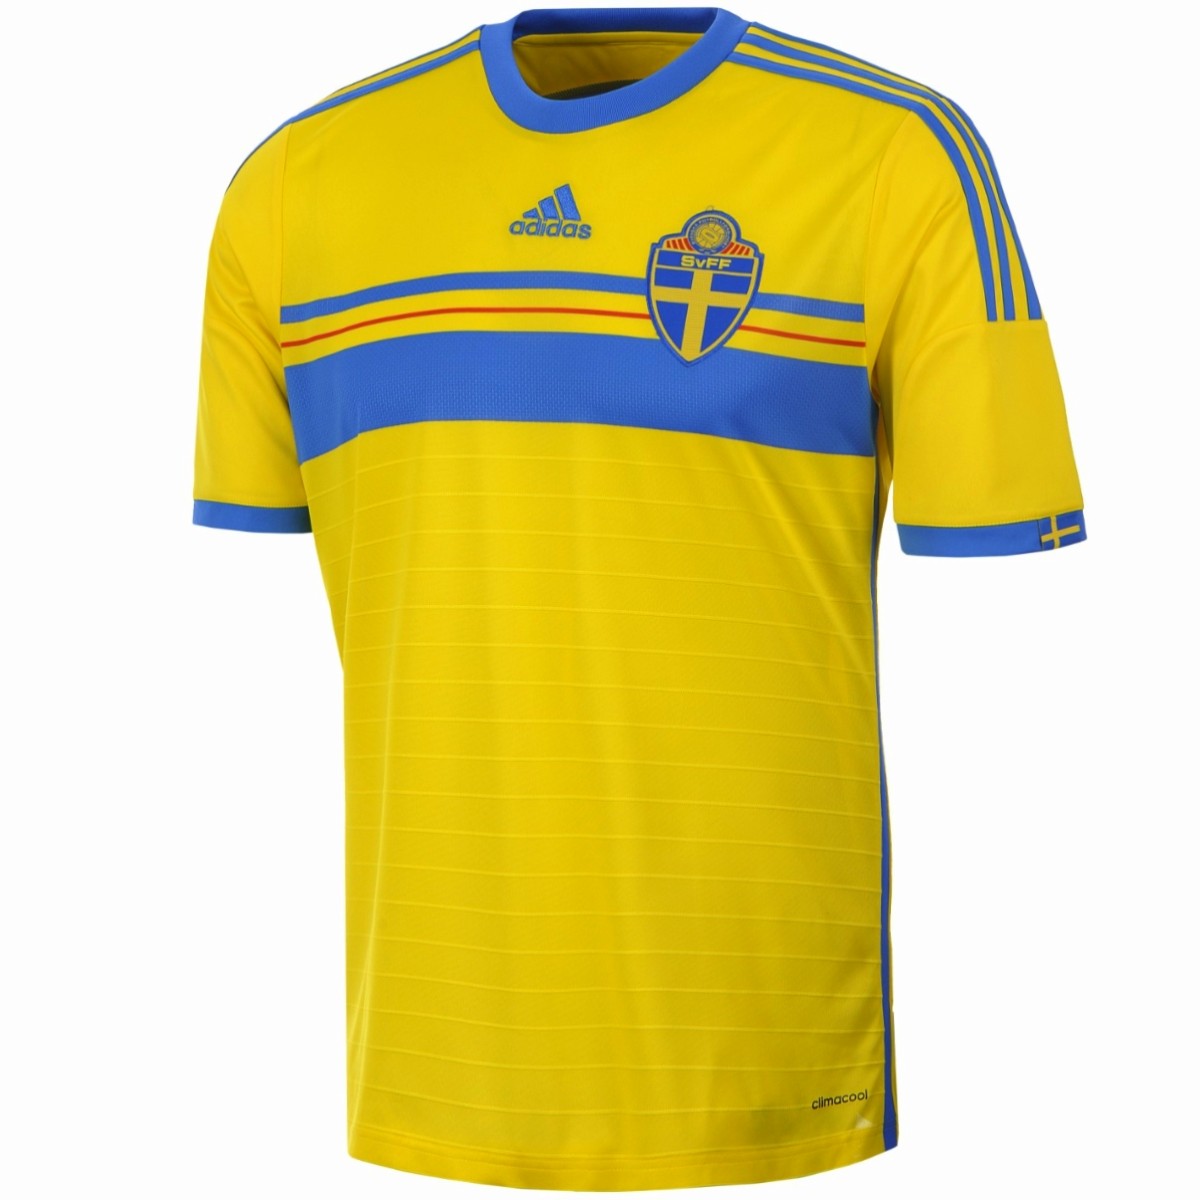 sweden football jersey